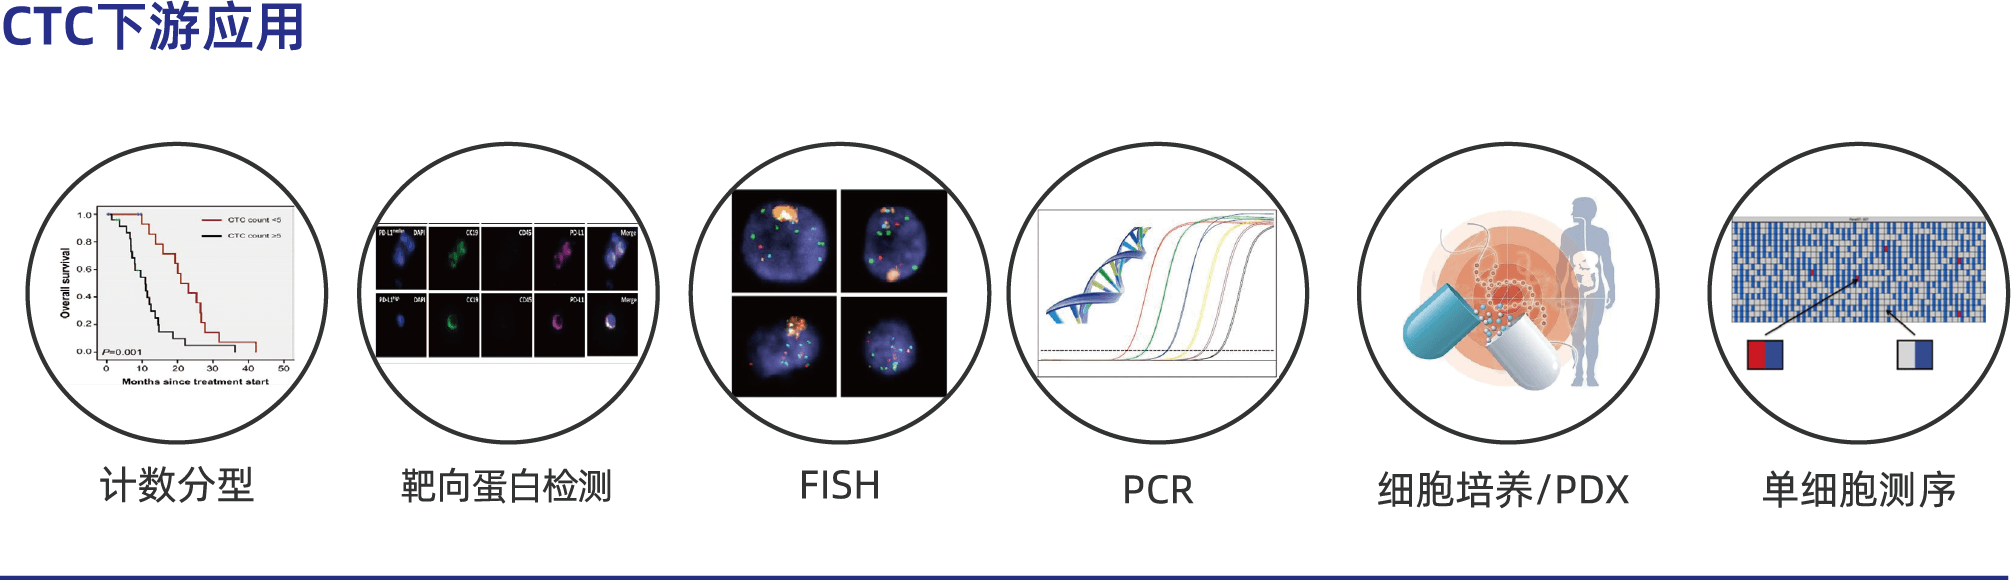 CTC100可应用到技术分型、靶向蛋白检测、FISH、PCR、细胞培养、单细胞测序等下游研究中